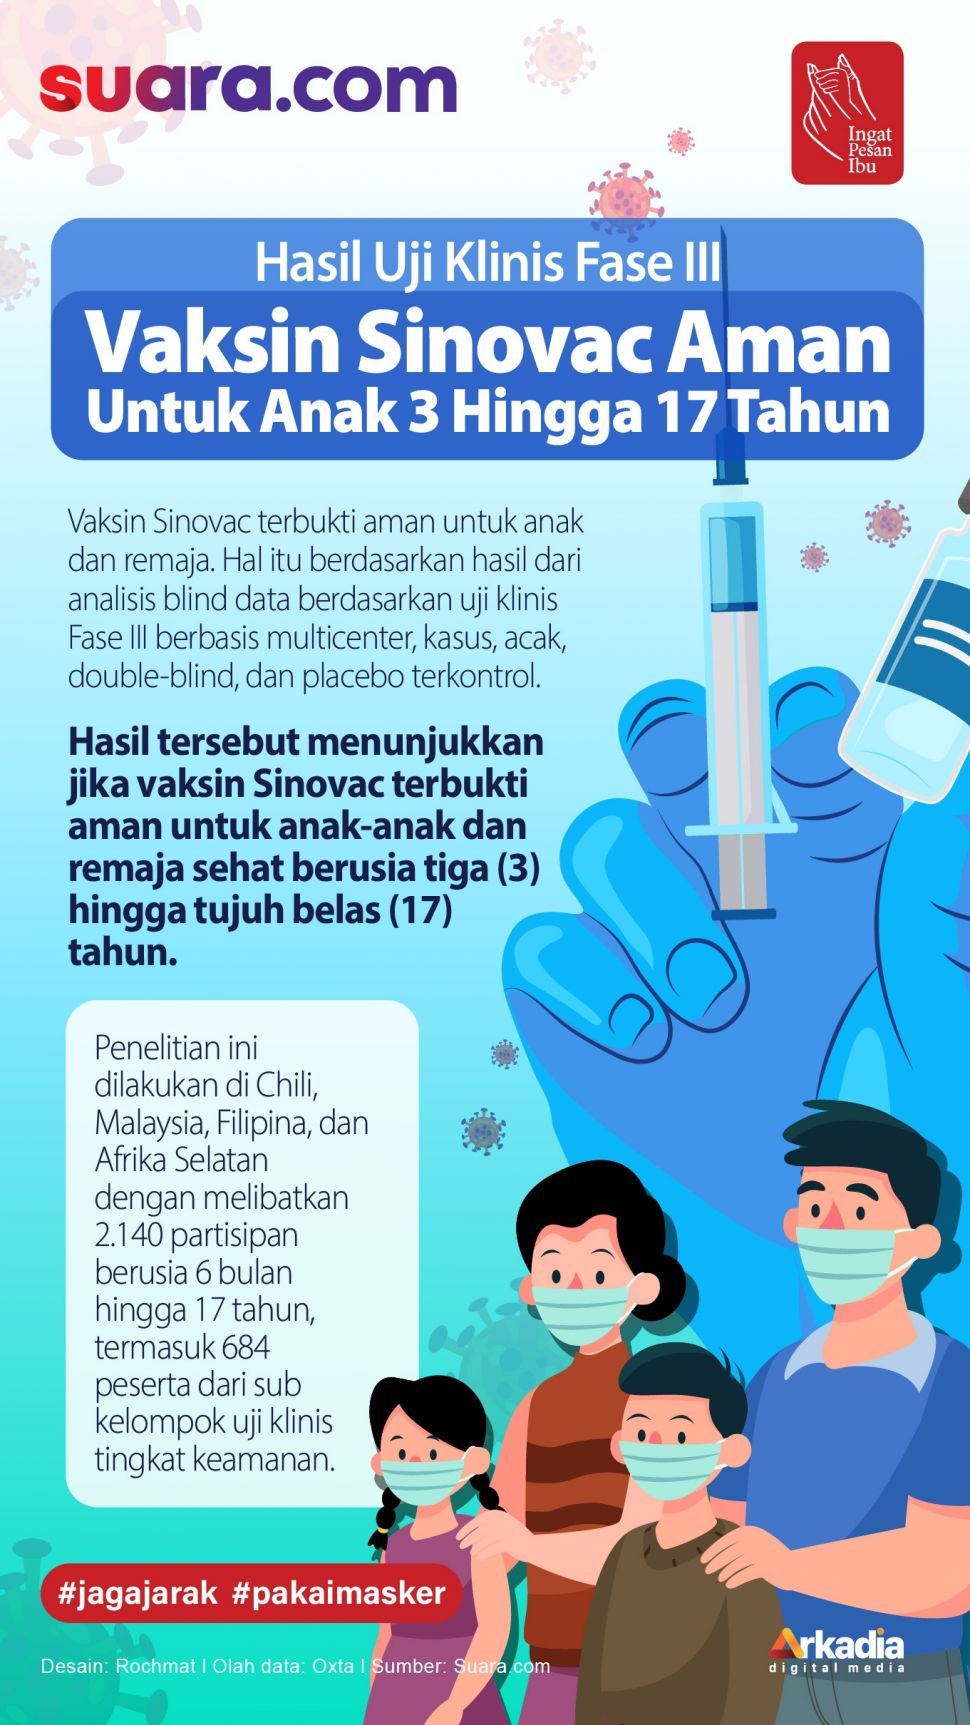 Apakah vaksin aman untuk anak